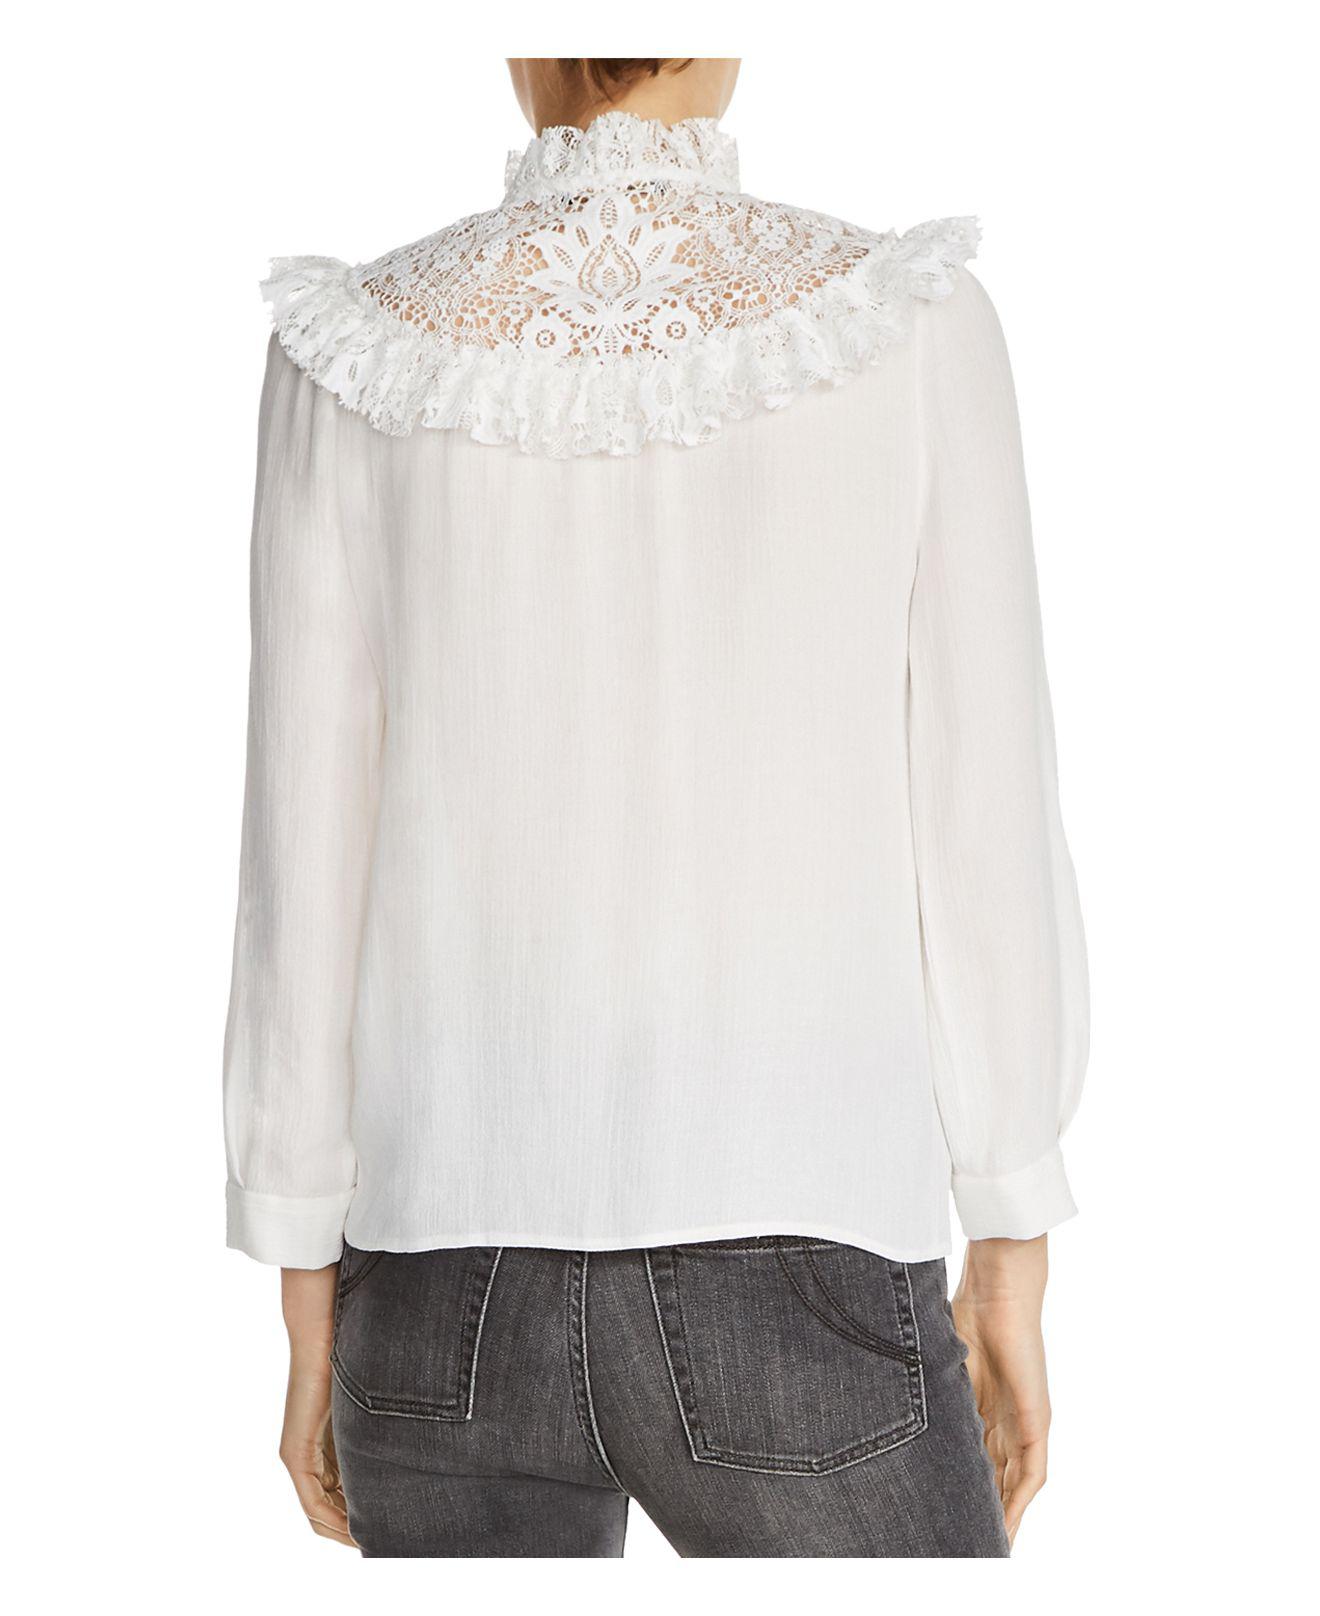 Maje Caprice Lace Trim Shirt in Ecru (White) - Lyst